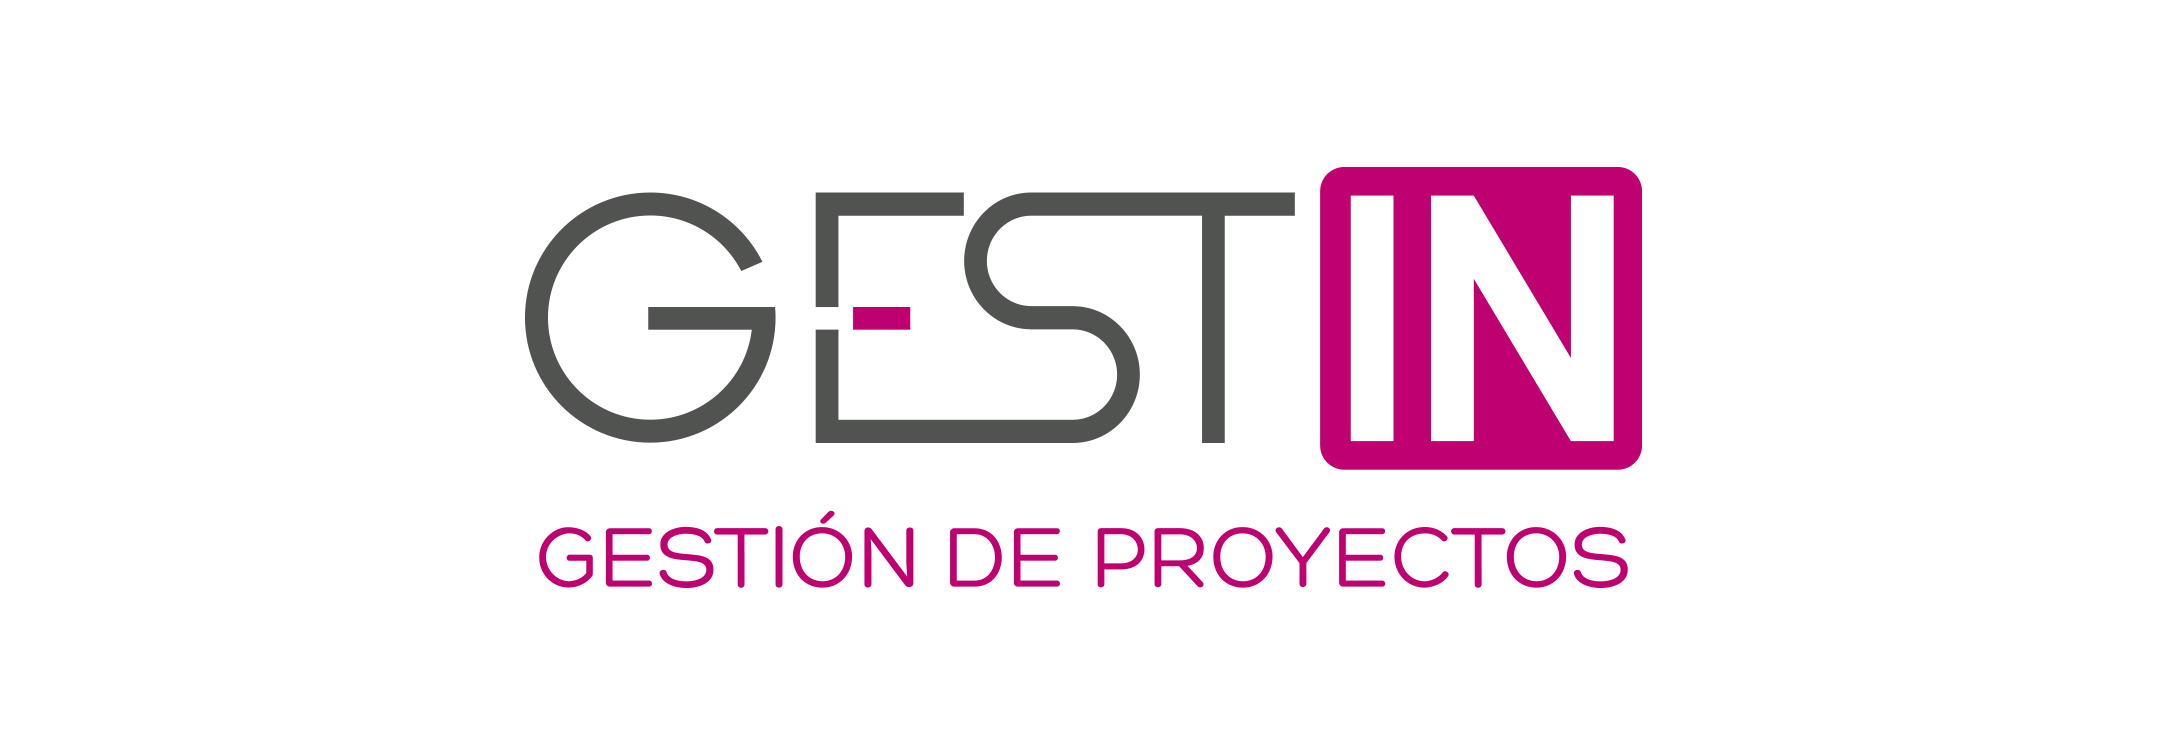 GESTIN Gestión de Proyectos, Reformas y Obra Nueva Alicante | Gestin